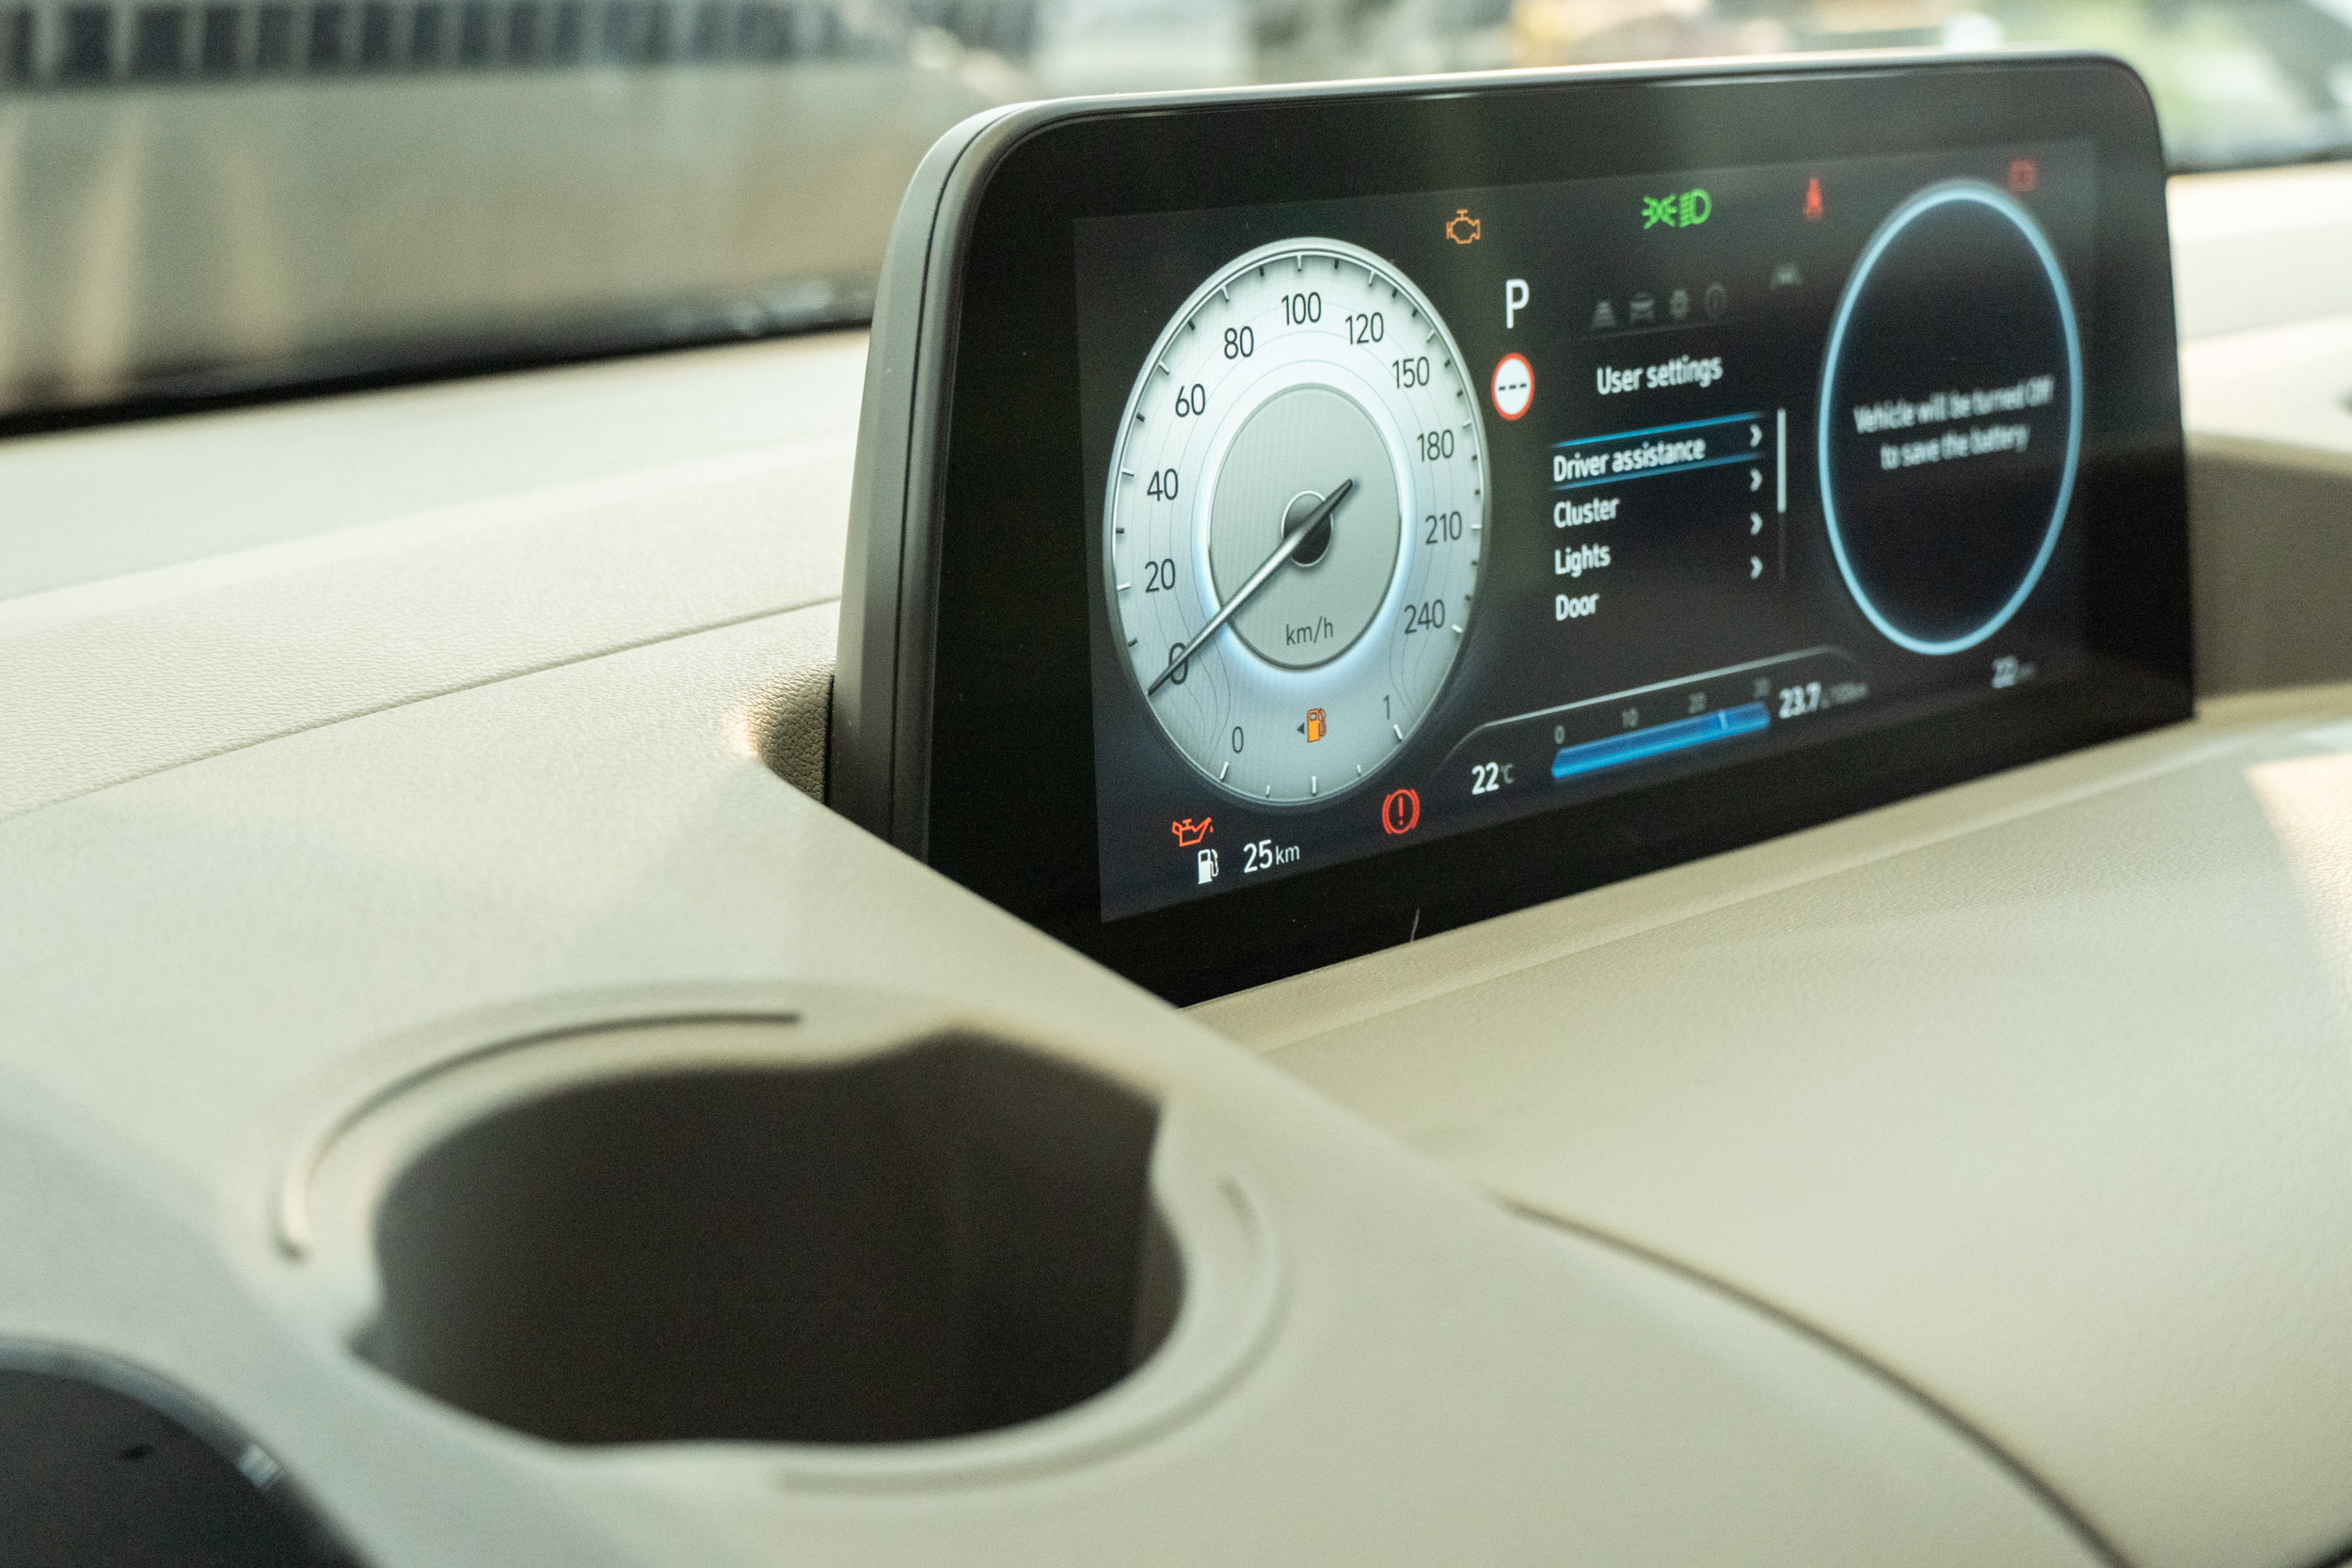 GLD-B 等級以上車型皆採用 10.25 吋數位儀表。